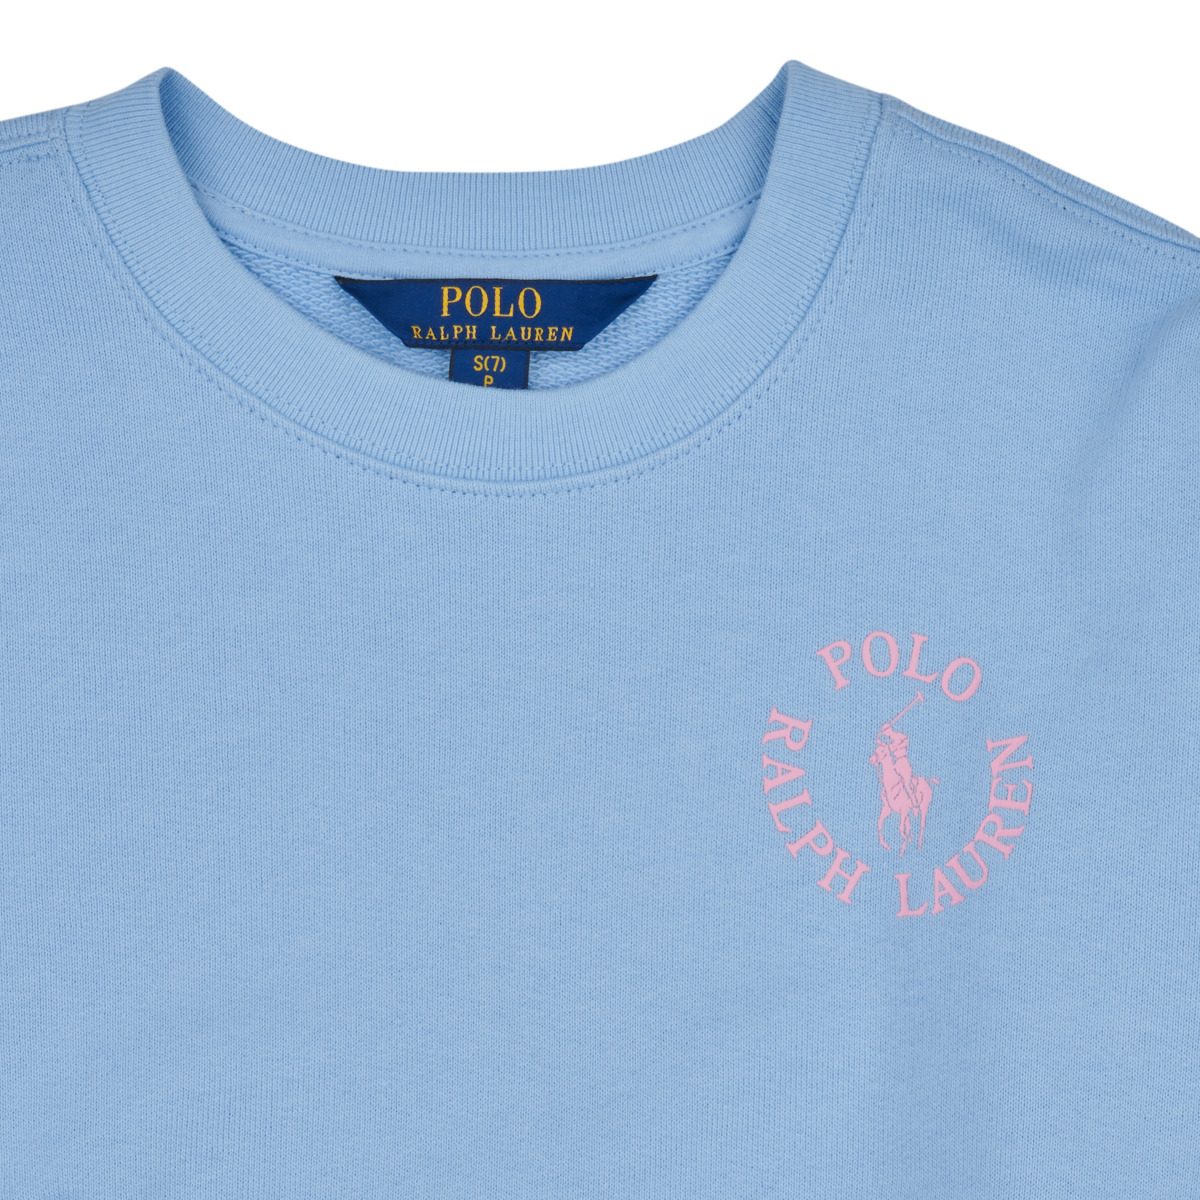 Polo Ralph Lauren Bleu ciel / Rose BUBBLE PO CN-KNIT-SWEATSHIRT Lj8D18Lc